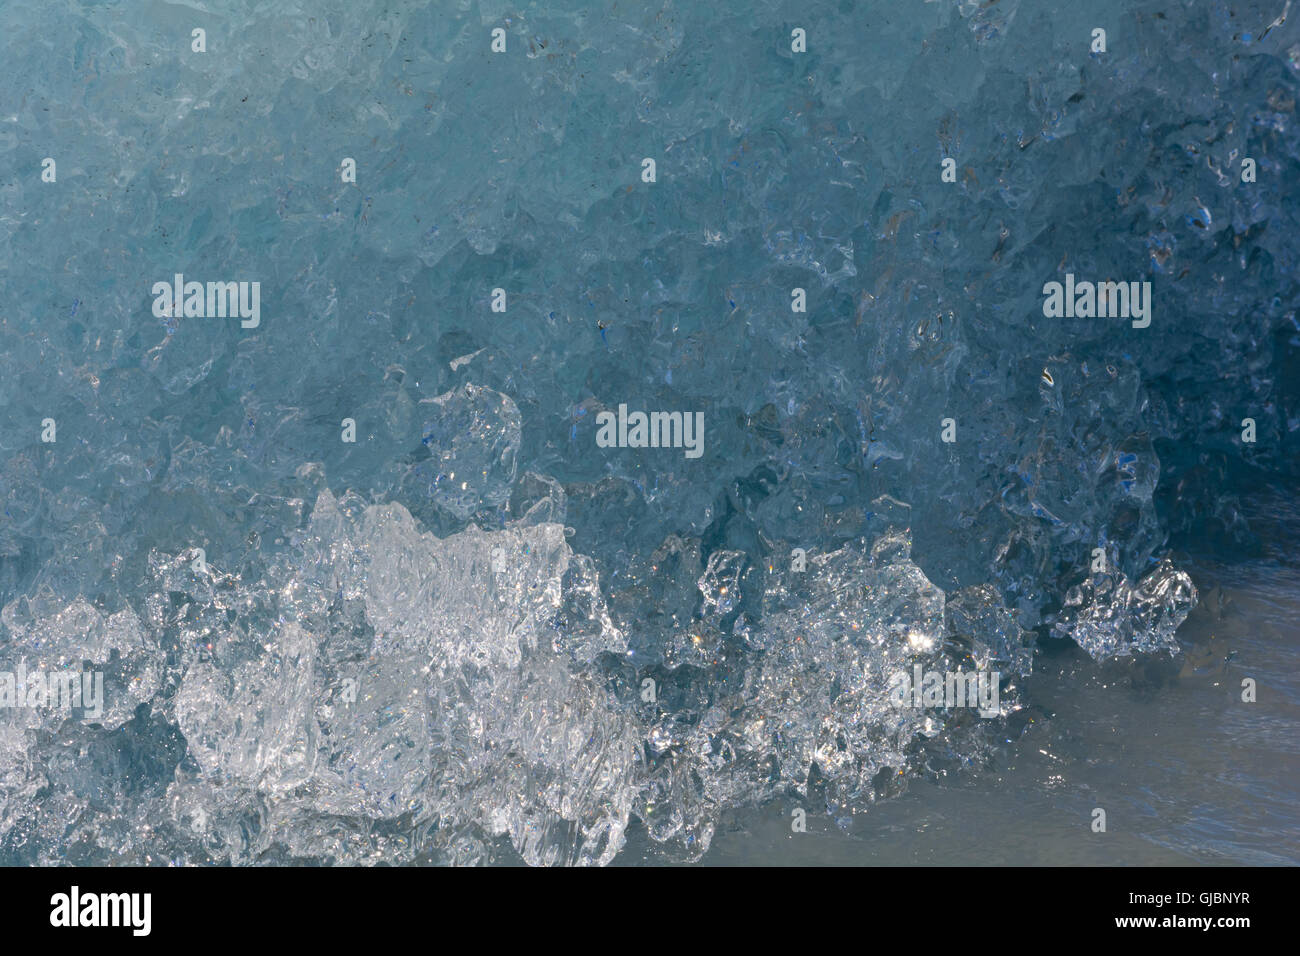 L'arrotondamento e la morbidezza di un iceberg di fusione è visibile in questo close-up dell'immagine. Foto Stock